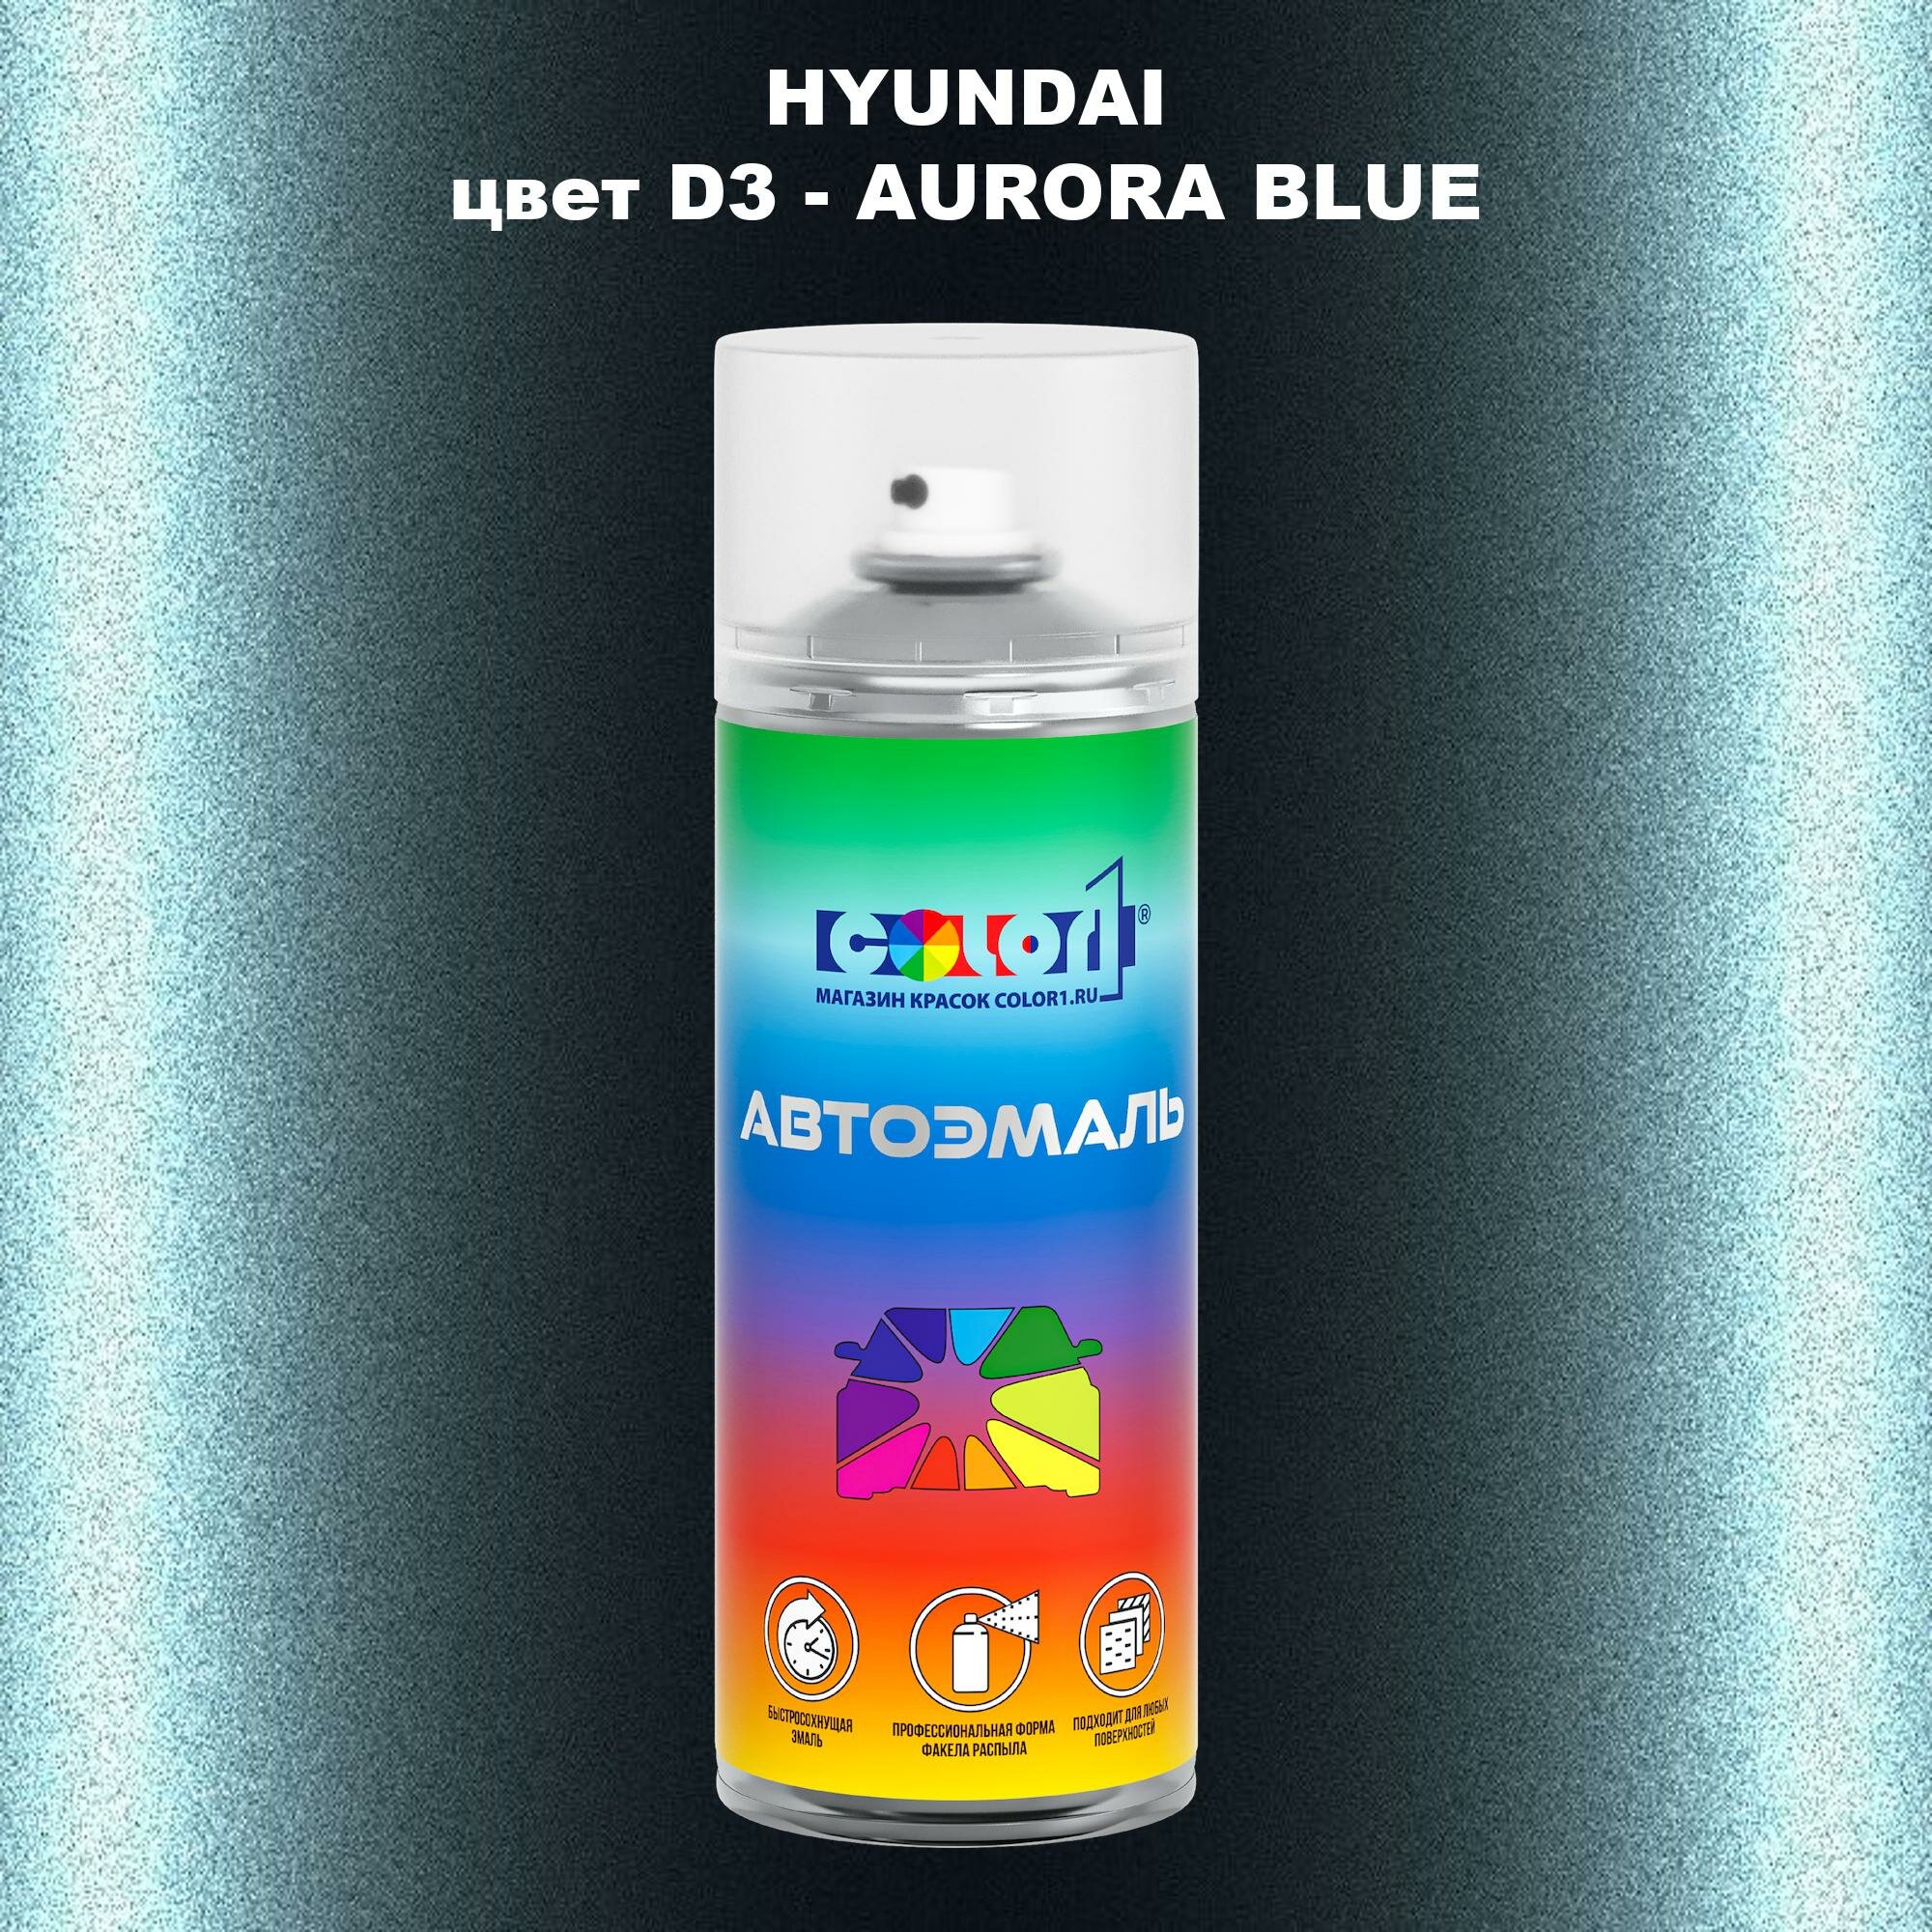 Аэрозольная краска COLOR1 для HYUNDAI, цвет D3 - AURORA BLUE